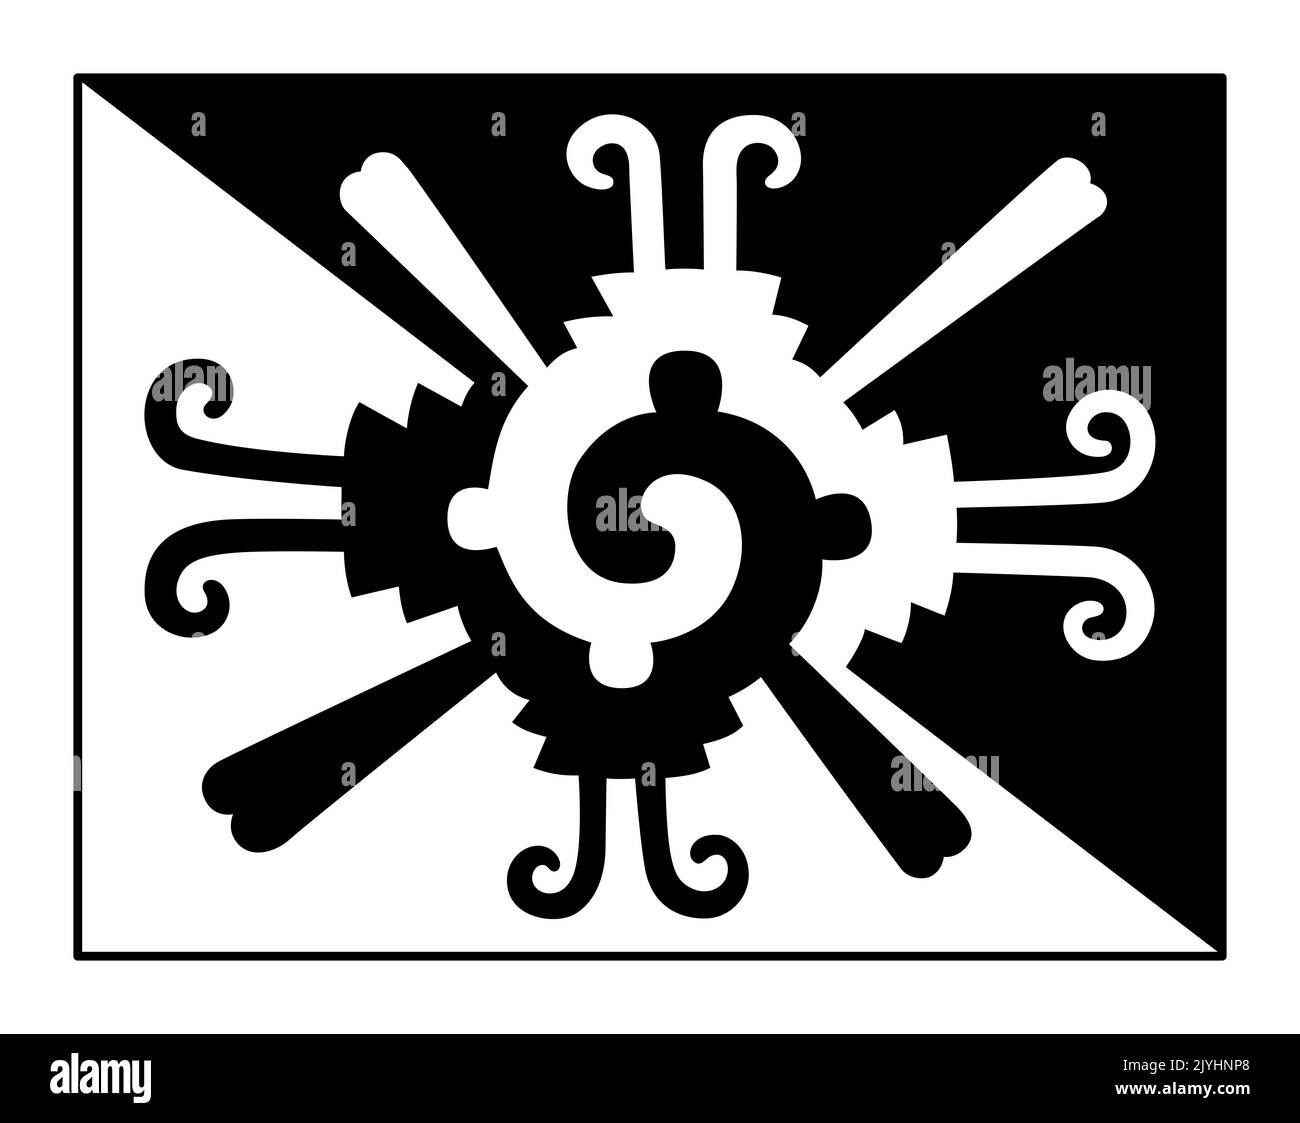 Mantello di acqua ragno, simbolo azteco e disegno rettangolare, utilizzato per un mantello rituale, mantello di tappi a labbro. Erroneamente considerato come simbolo Hunab Ku. Foto Stock